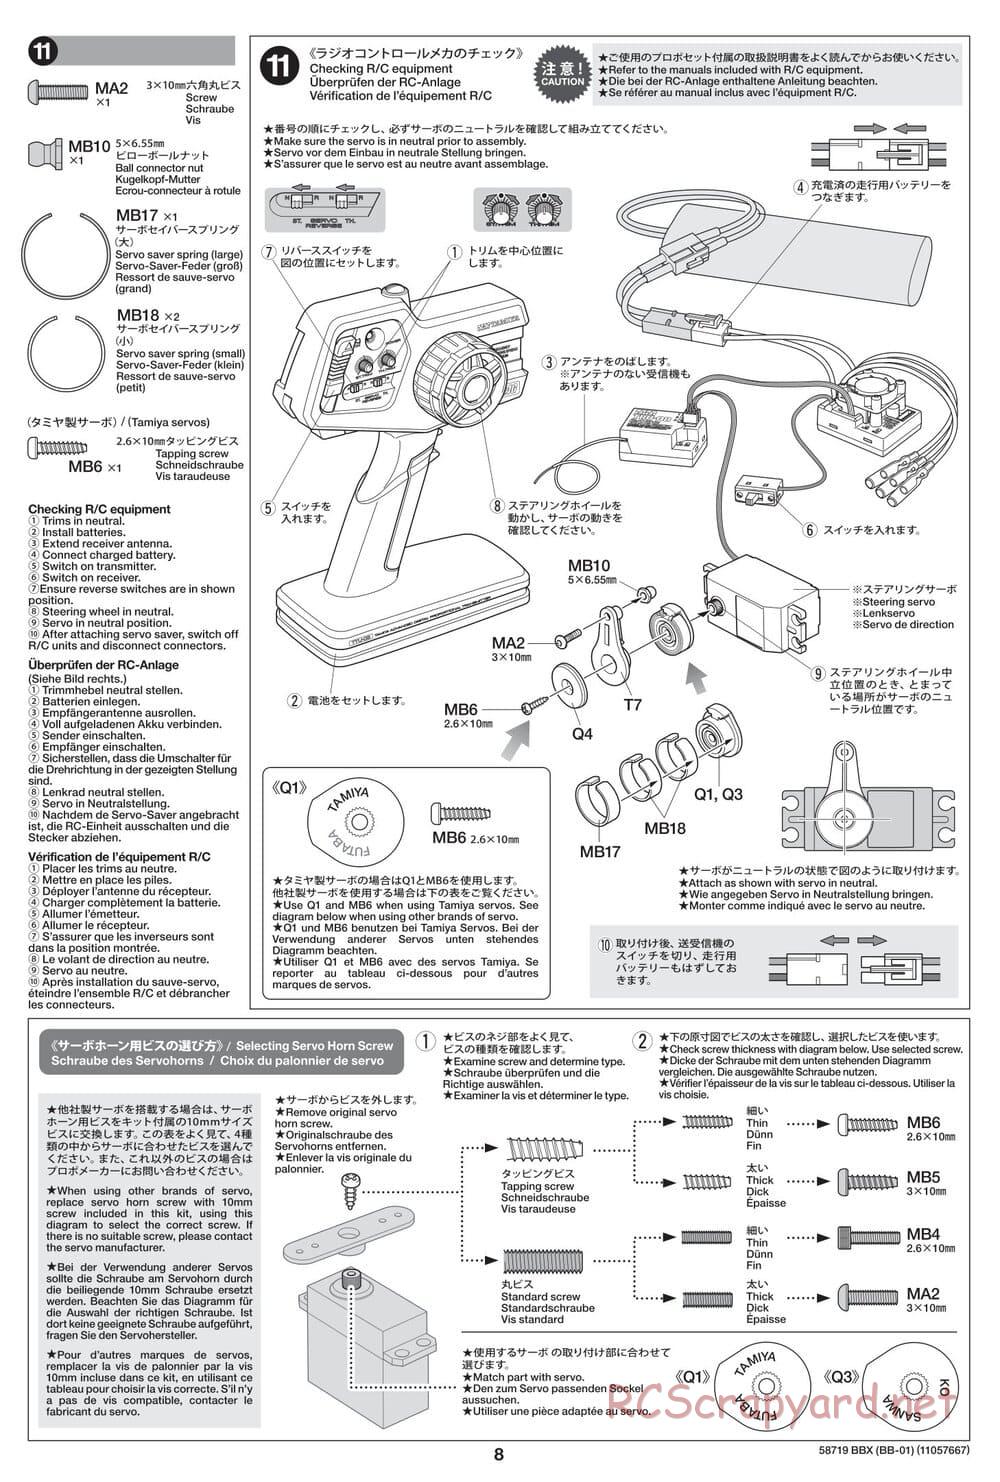 Tamiya - BBX - BB-01 Chassis - Manual - Page 8